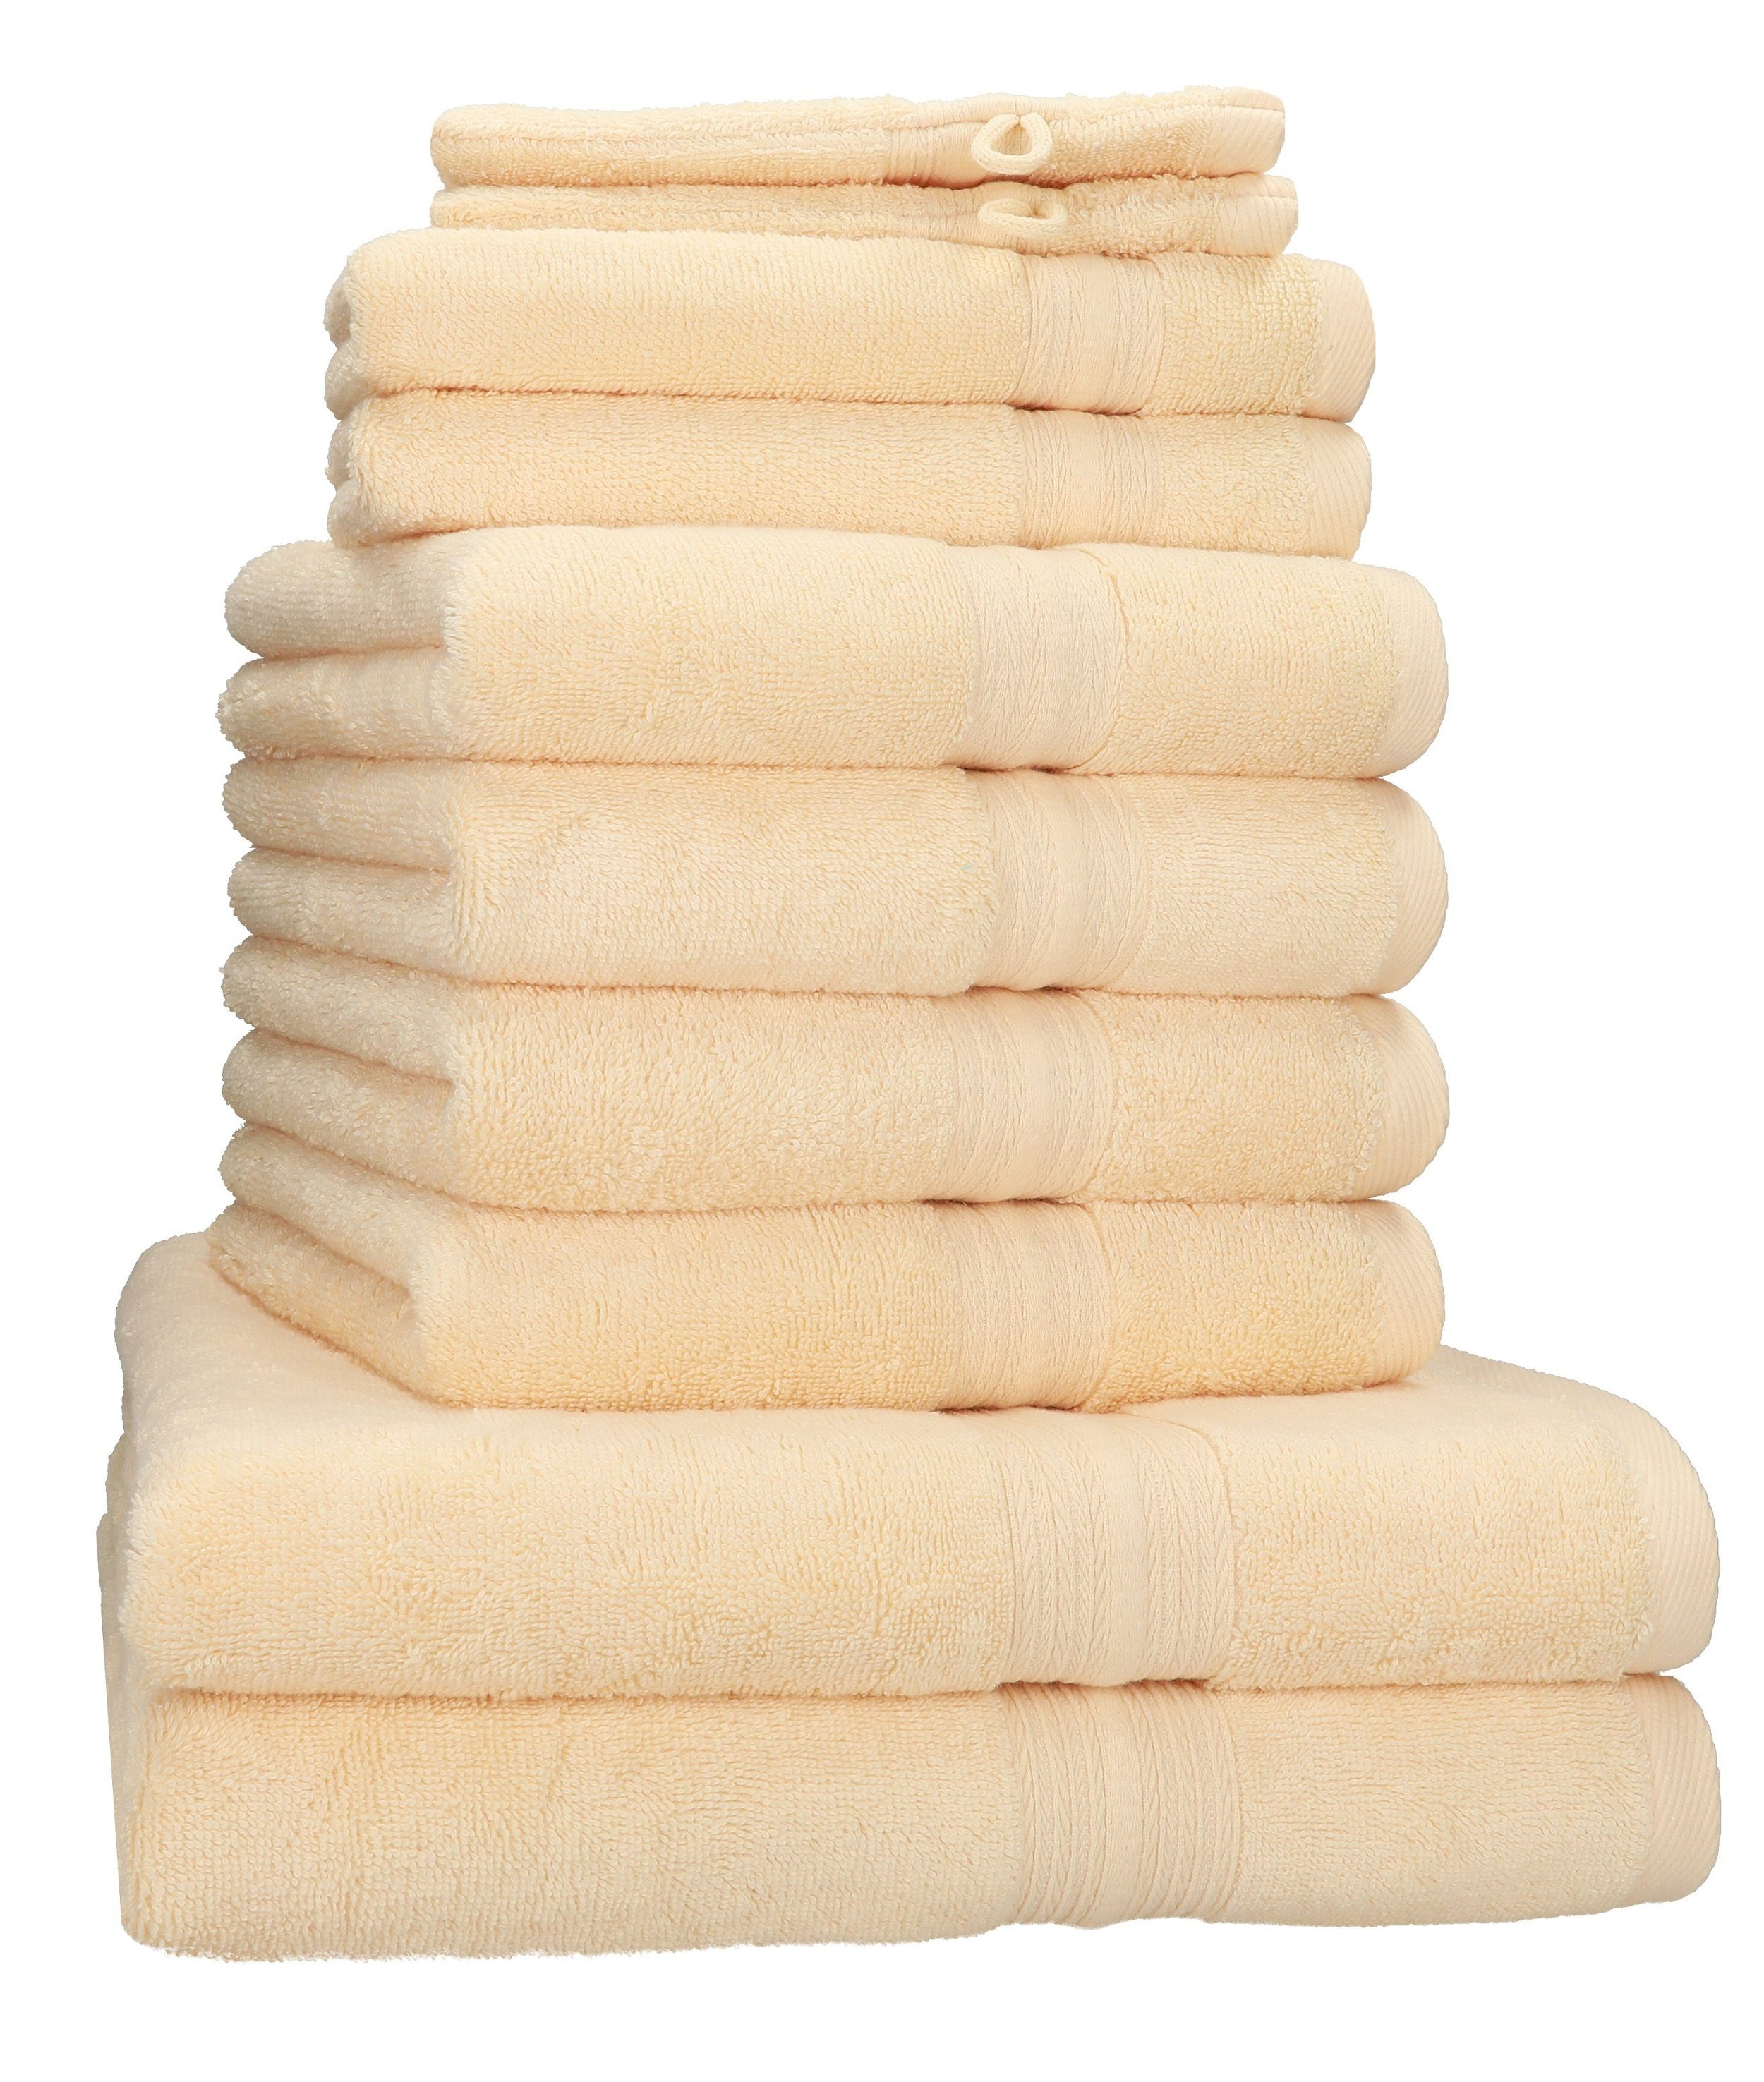 2 Baumwolle, Handtuch-Set 2 (10-tlg) Gold Waschhandschuhe, Set Handtuch Baumwolle 100% 4 600g/m² 2 Duschtücher Gästetücher Betz 100% Handtücher PURES Qualität 10-TLG.